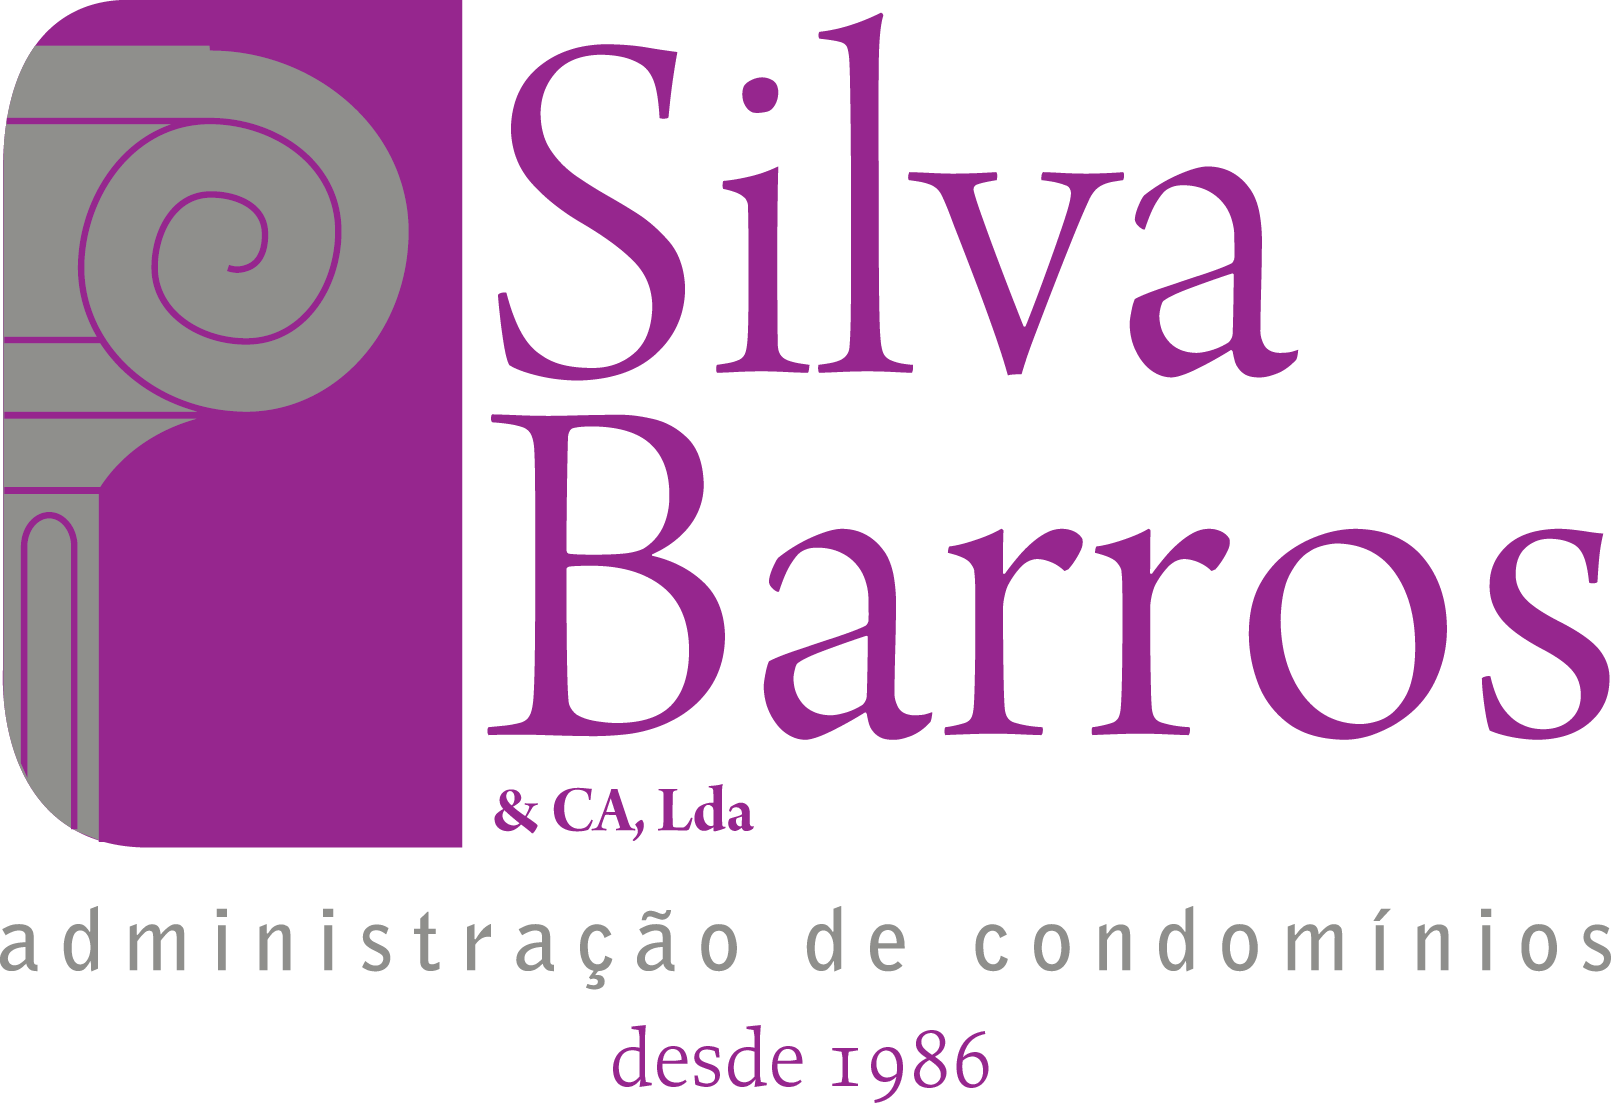 Silva Barros